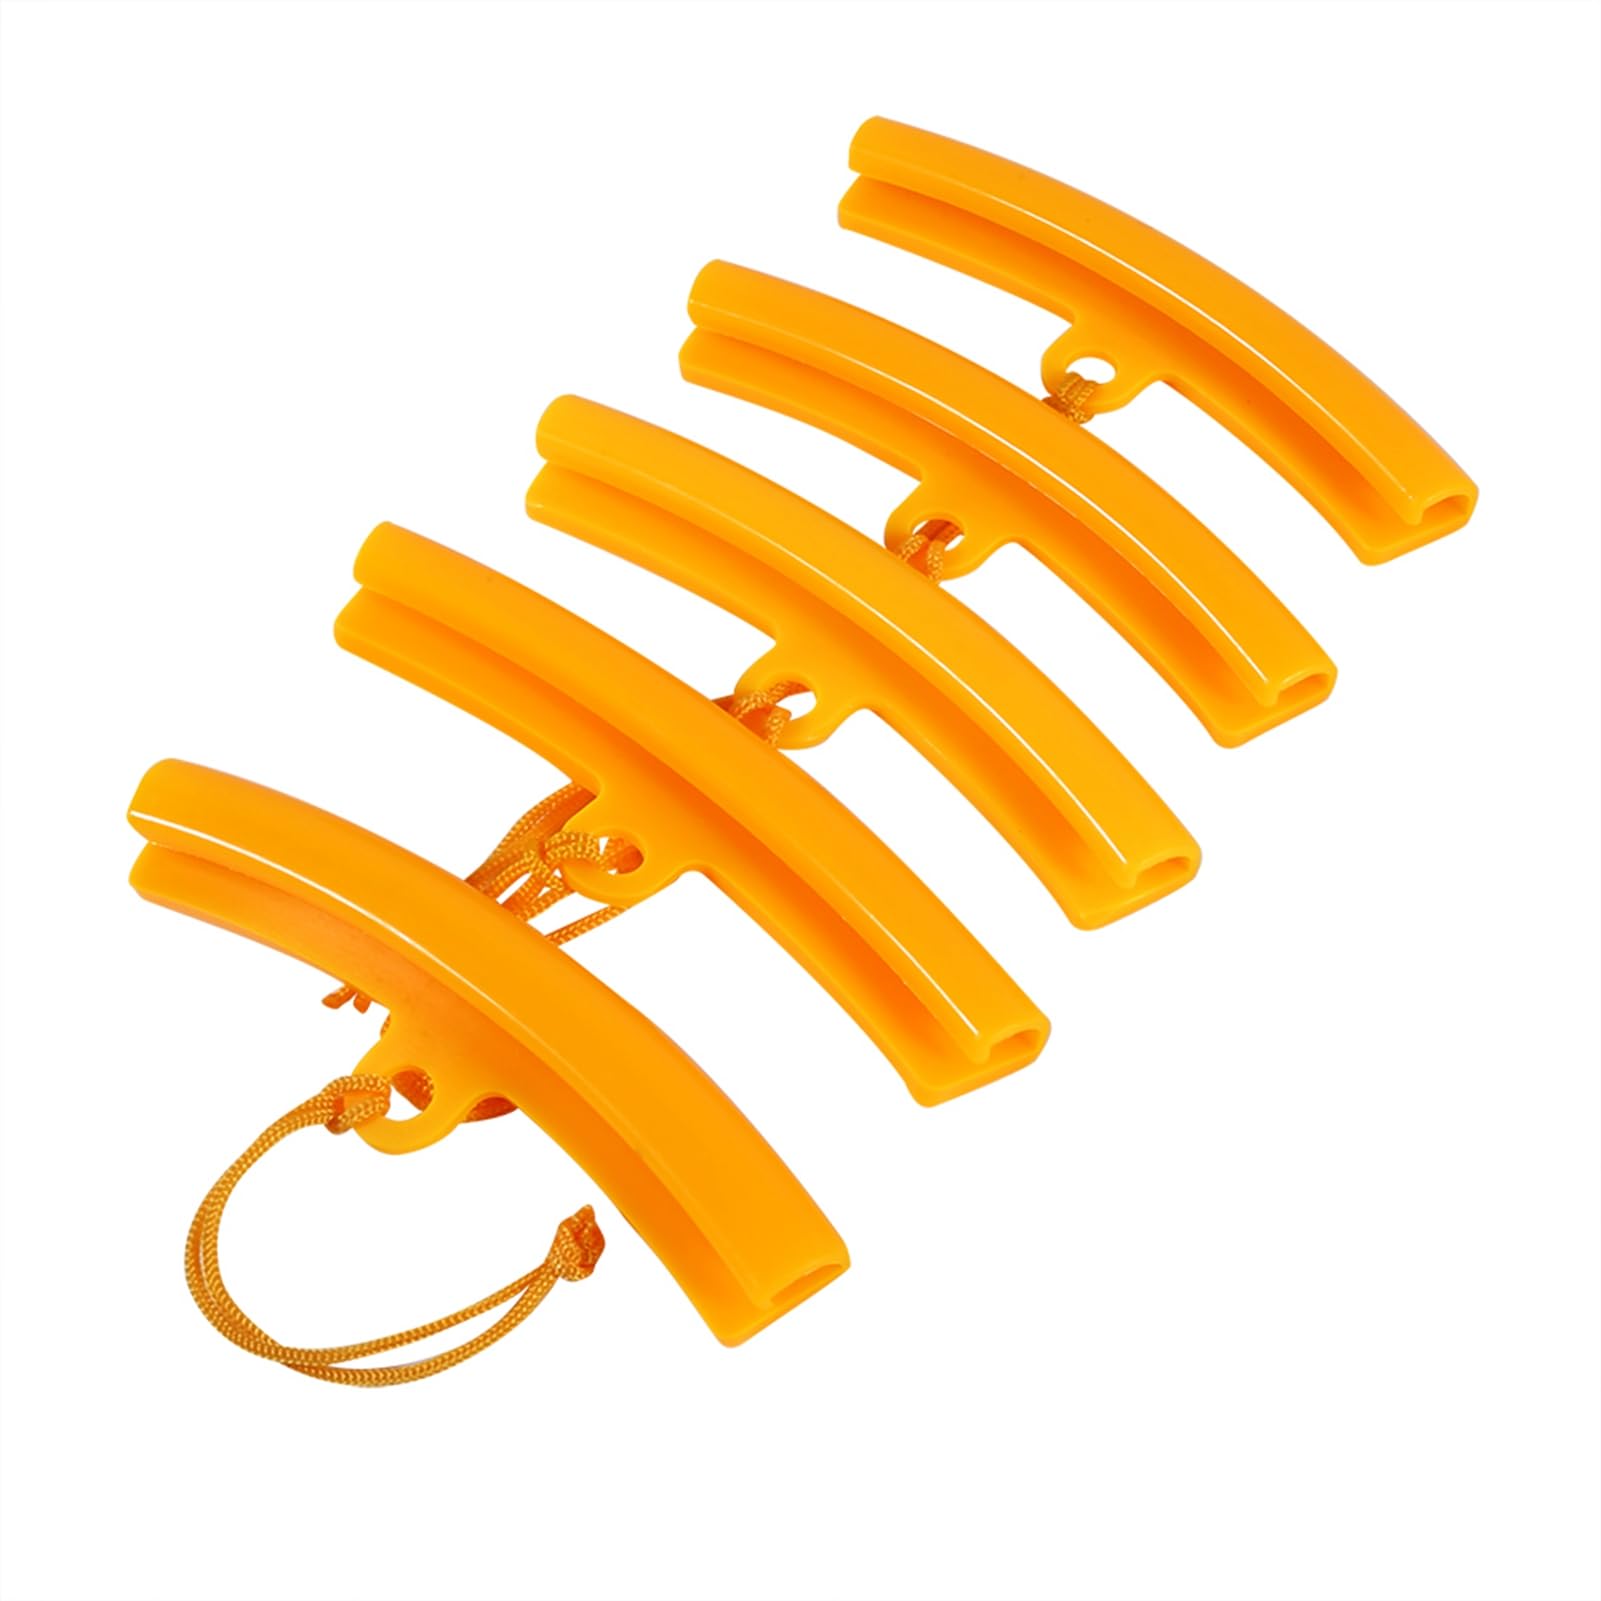 Holigie Felgenschutz für Autoräder, Radschutz, robust, widerstandsfähig, 15 cm, 5 Stück, Felgenschutz für Motorrad, SUV (Orange Yellow) von Holigie